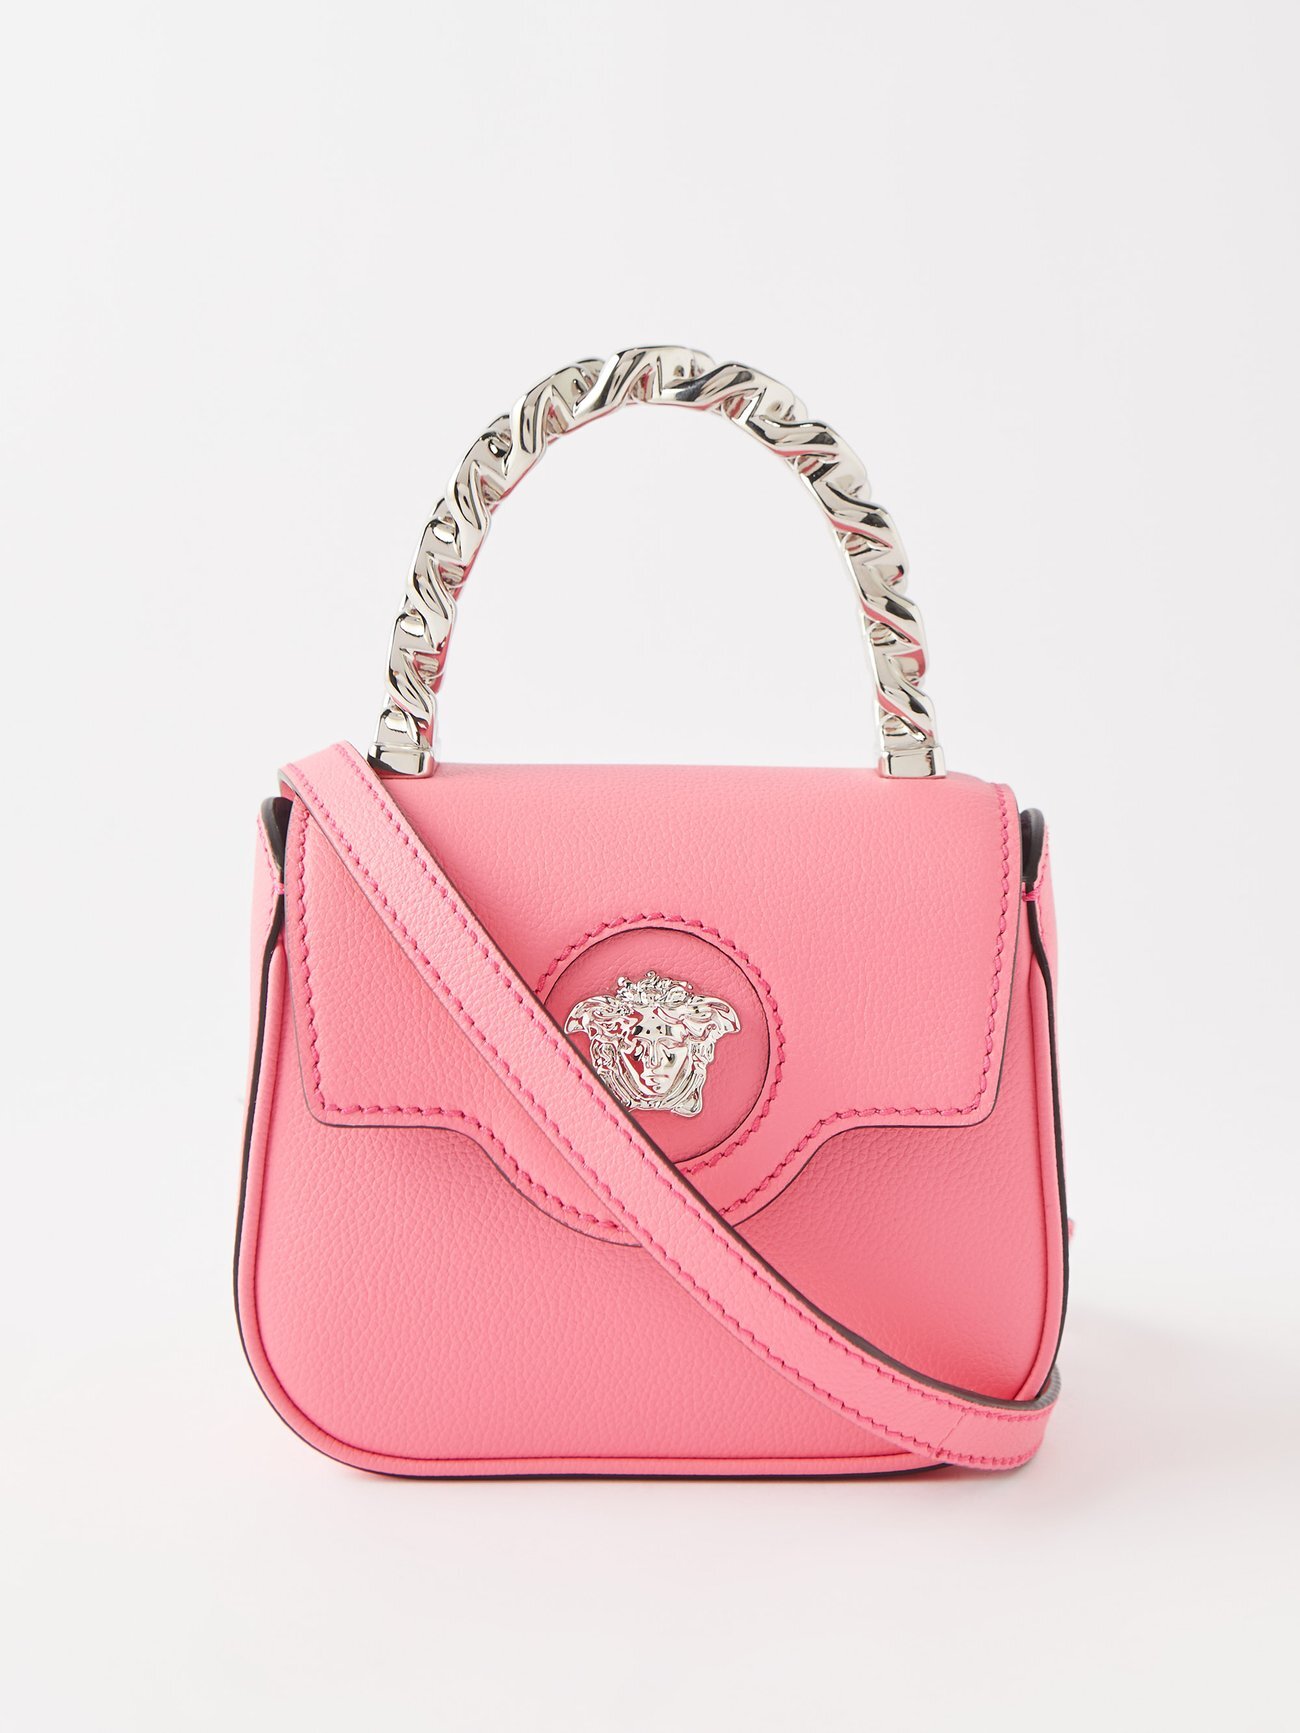 Versace - La Medusa Mini Leather Handbag - Womens - Pink